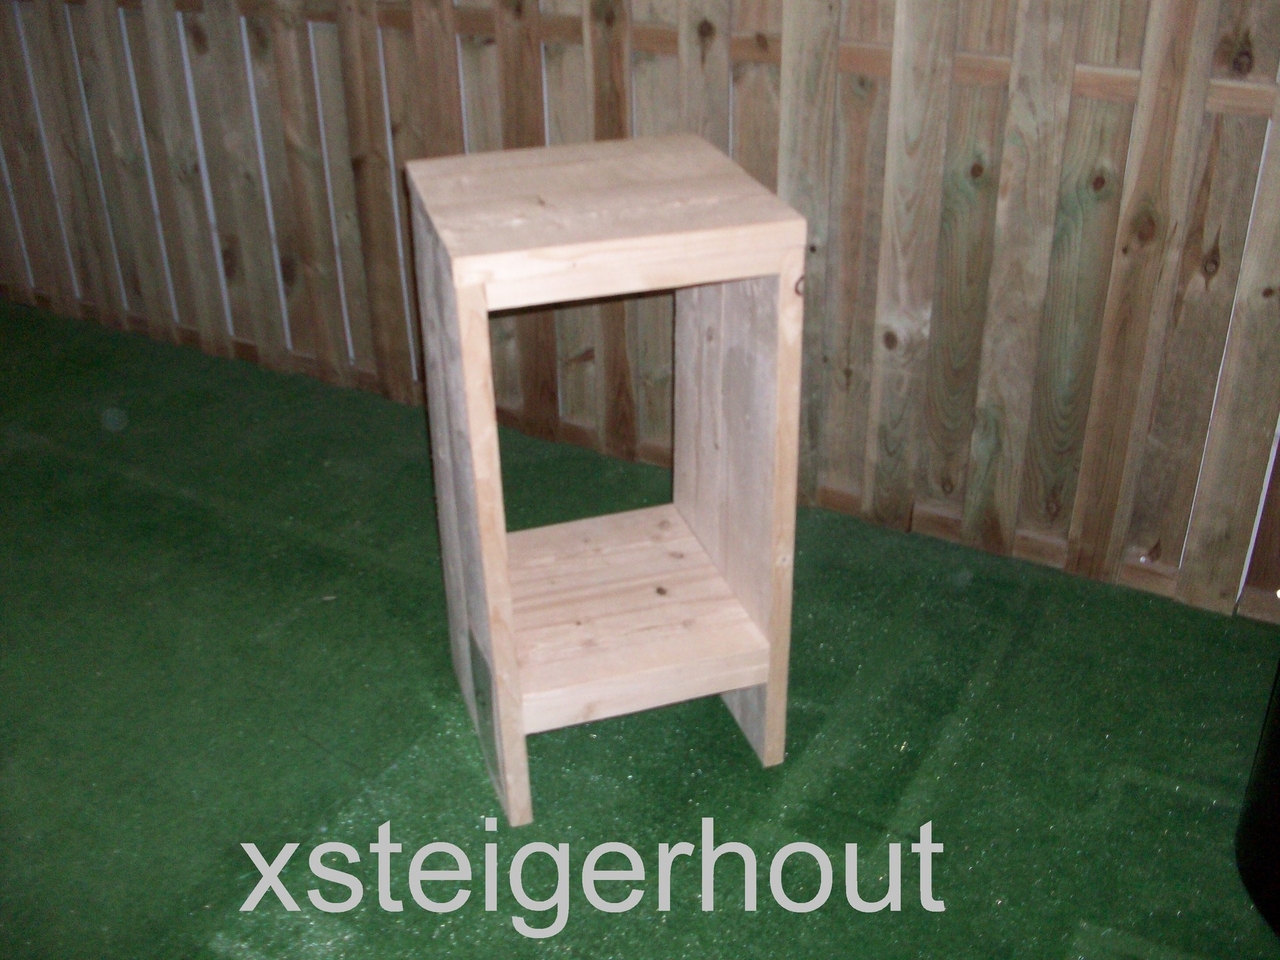 Barkruk steigerhout bouwpakket 33,- xsteigerhout.nl - xsteigerhout